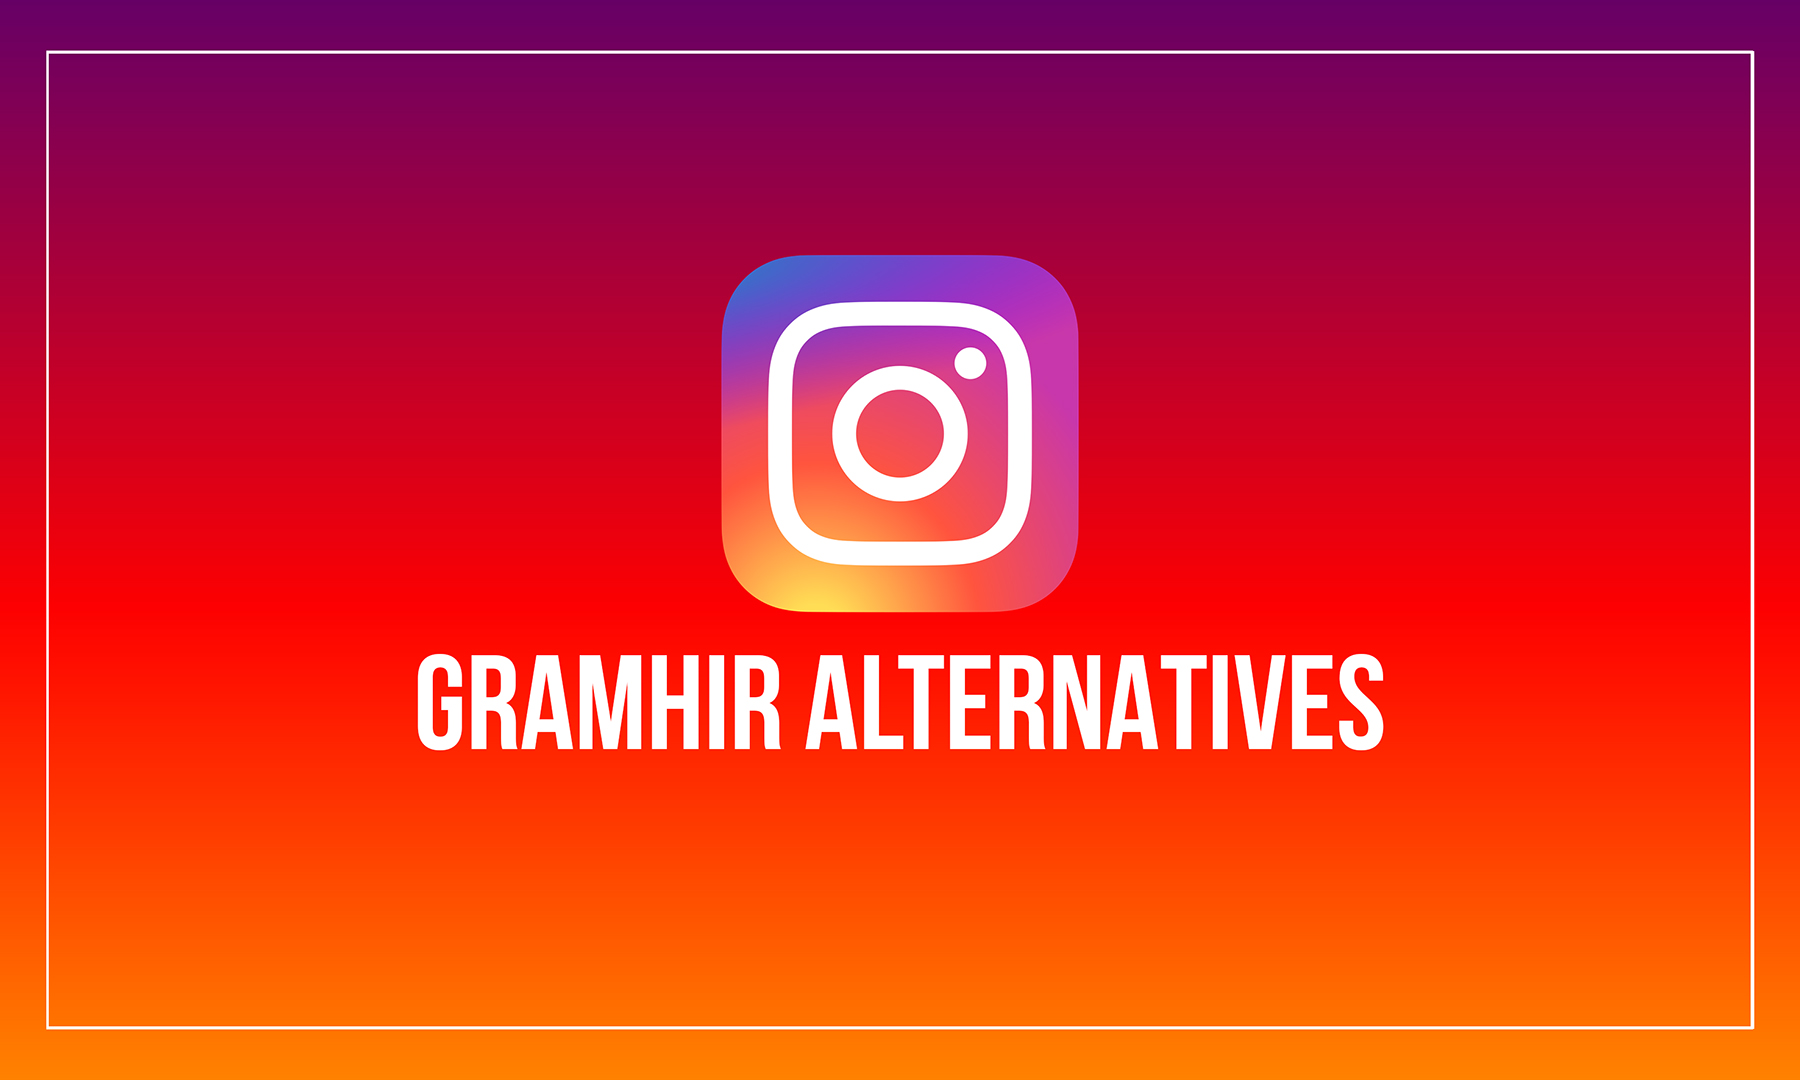 Gramhir: 15 bedste websteder til at se Instagram uden en konto